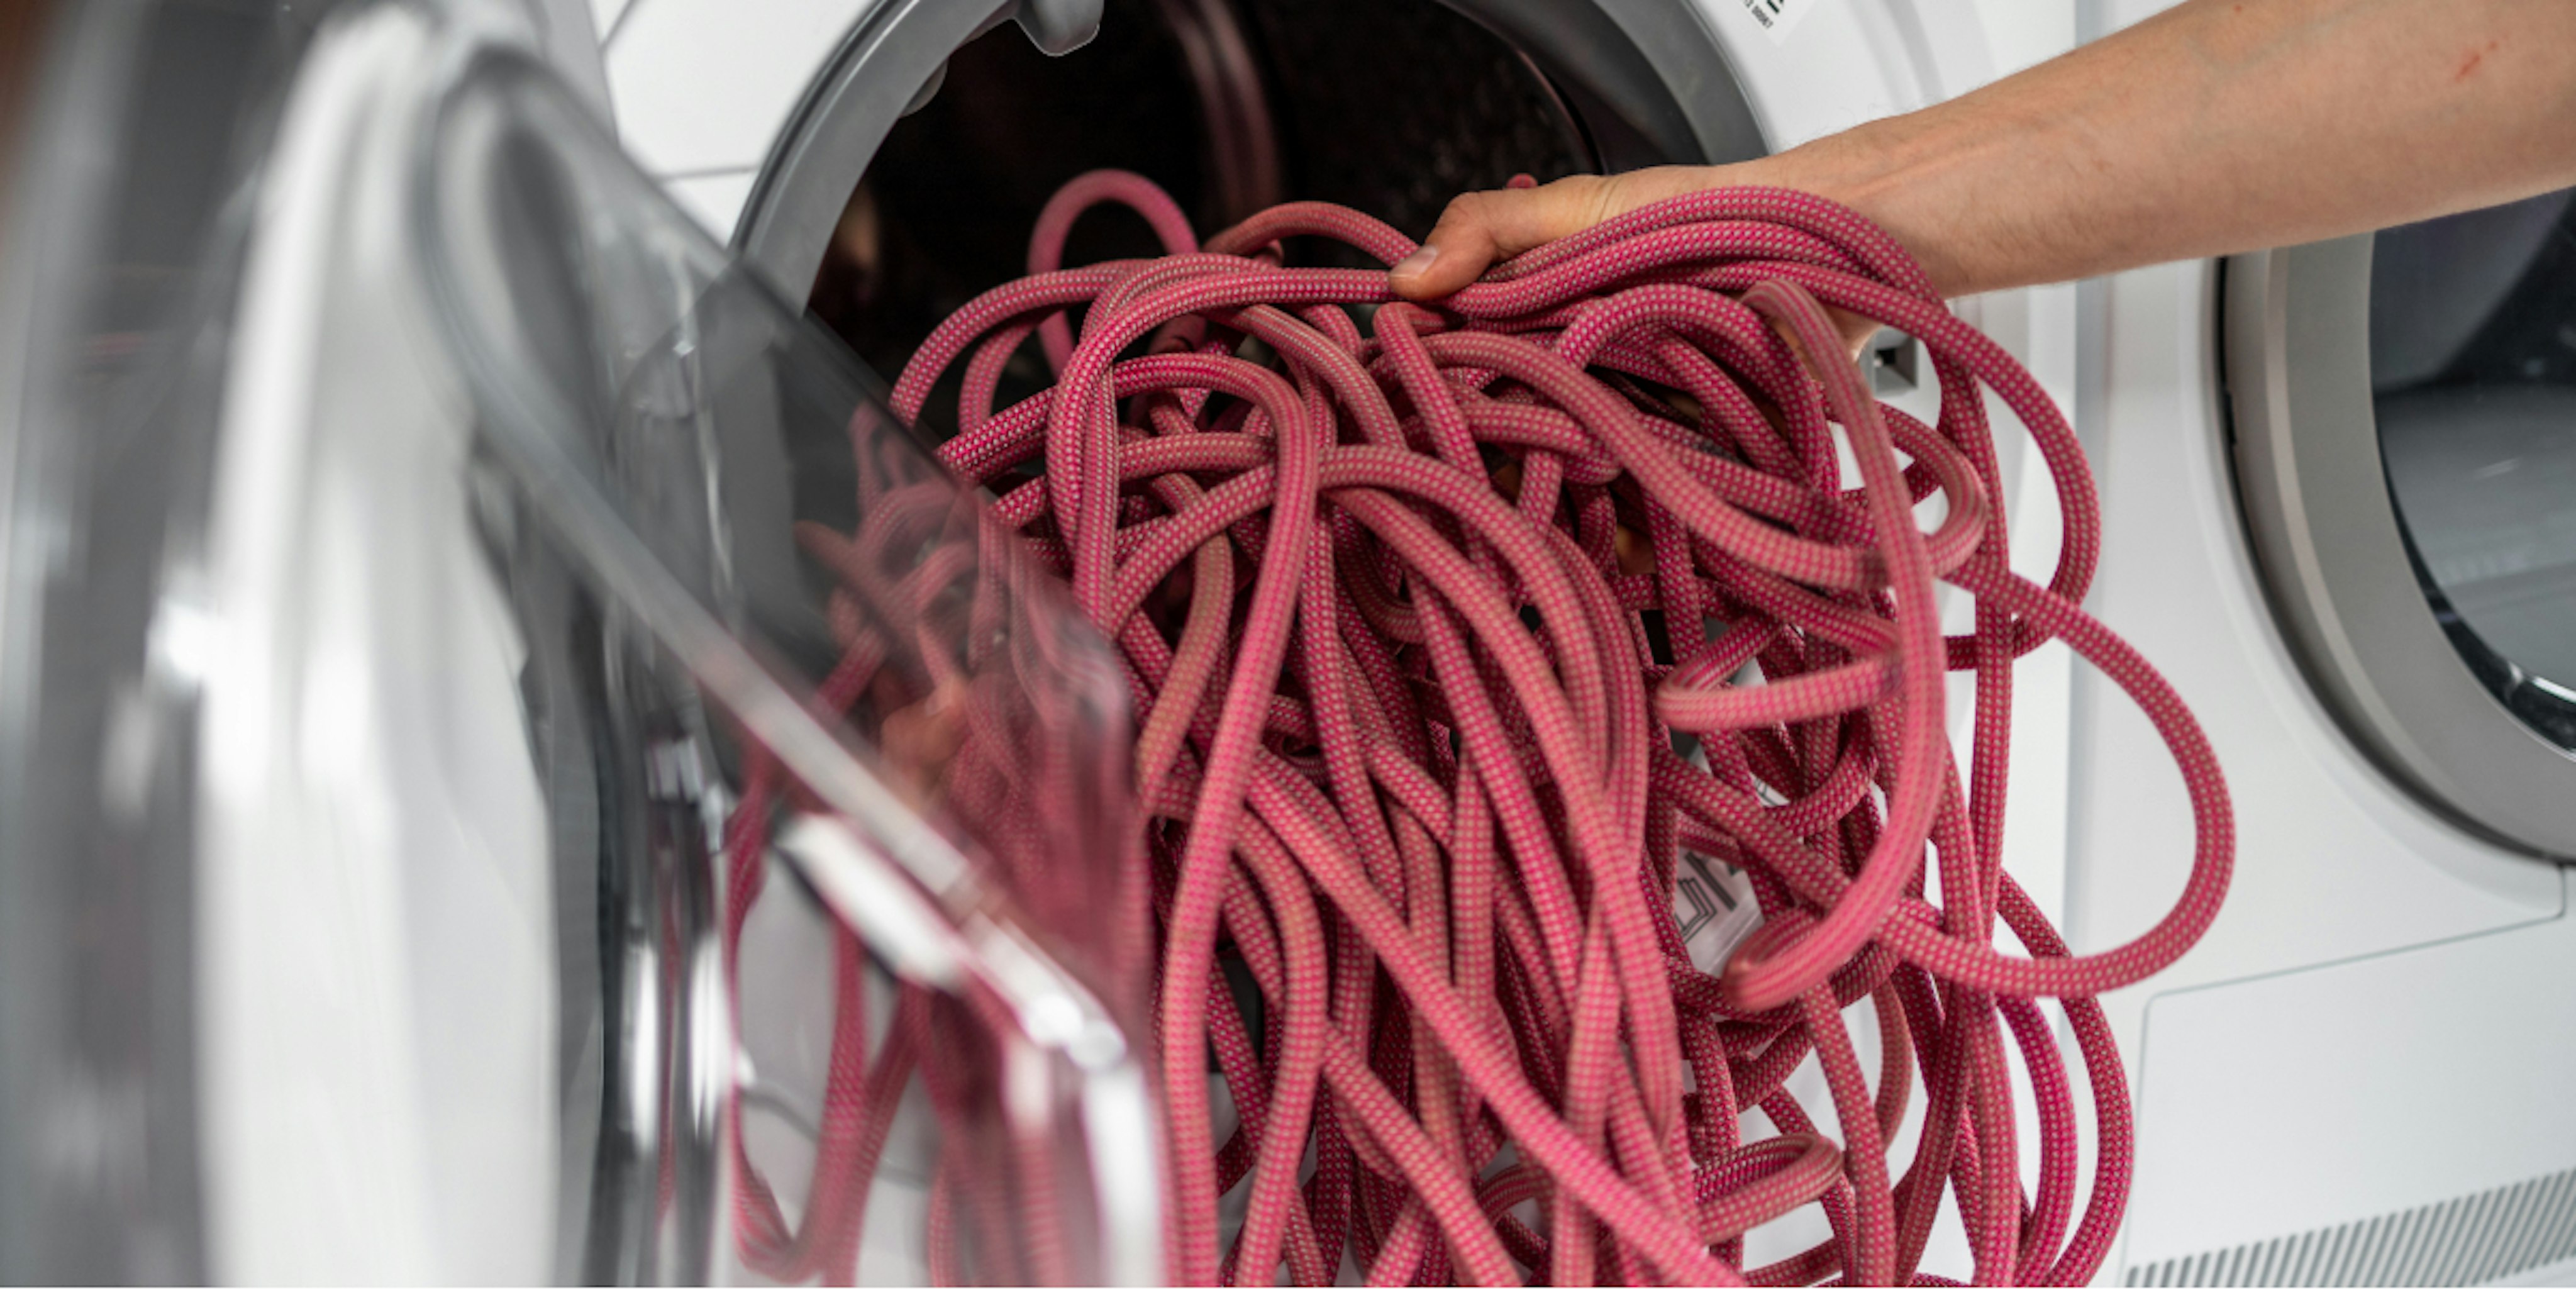 Das Seil wird in die Waschmaschine getan